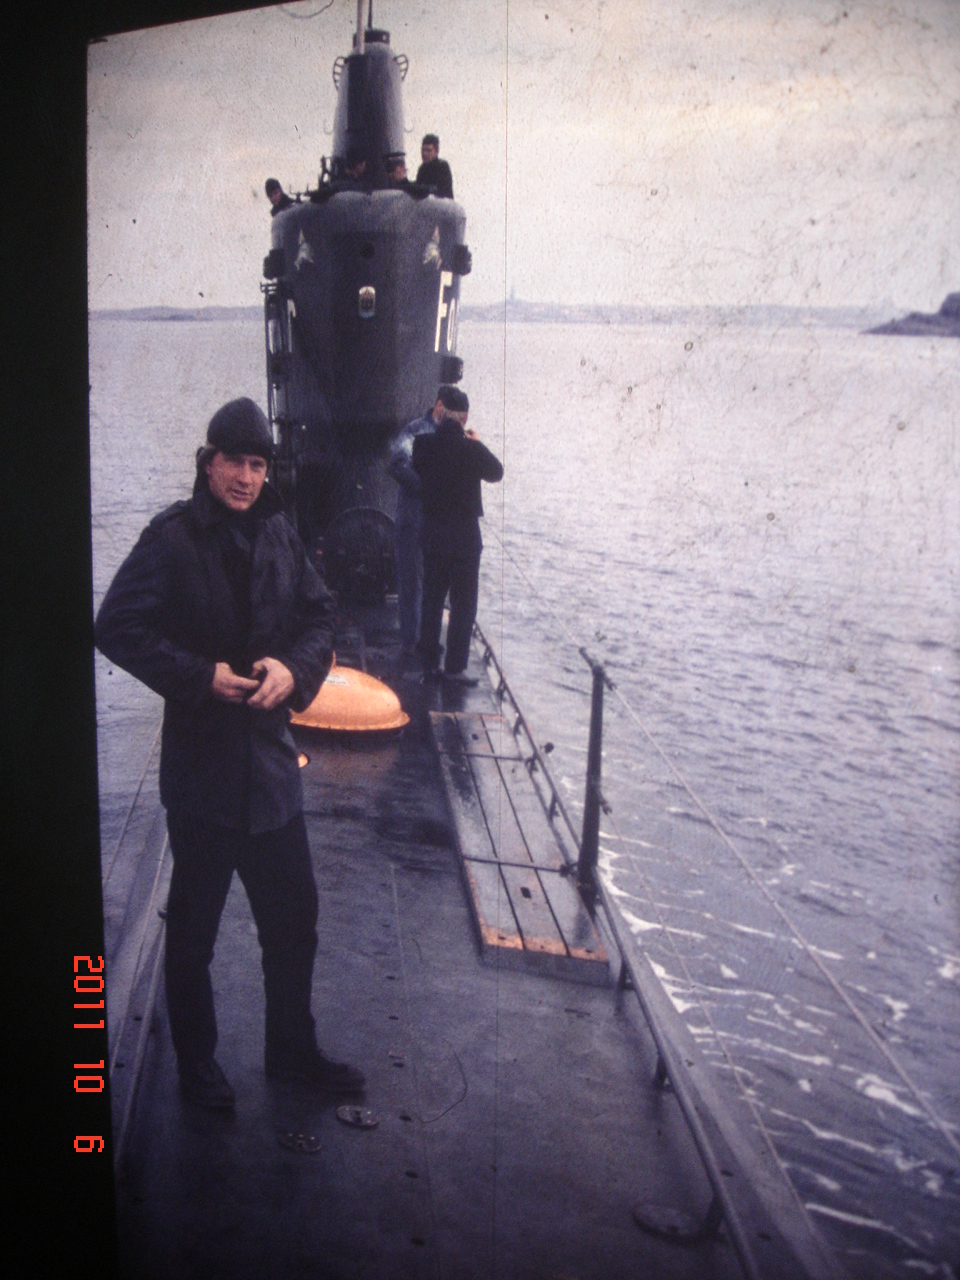 Som skeppsnummer 1 pÃ¥ HMS Forellens dÃ¤ck 1962

